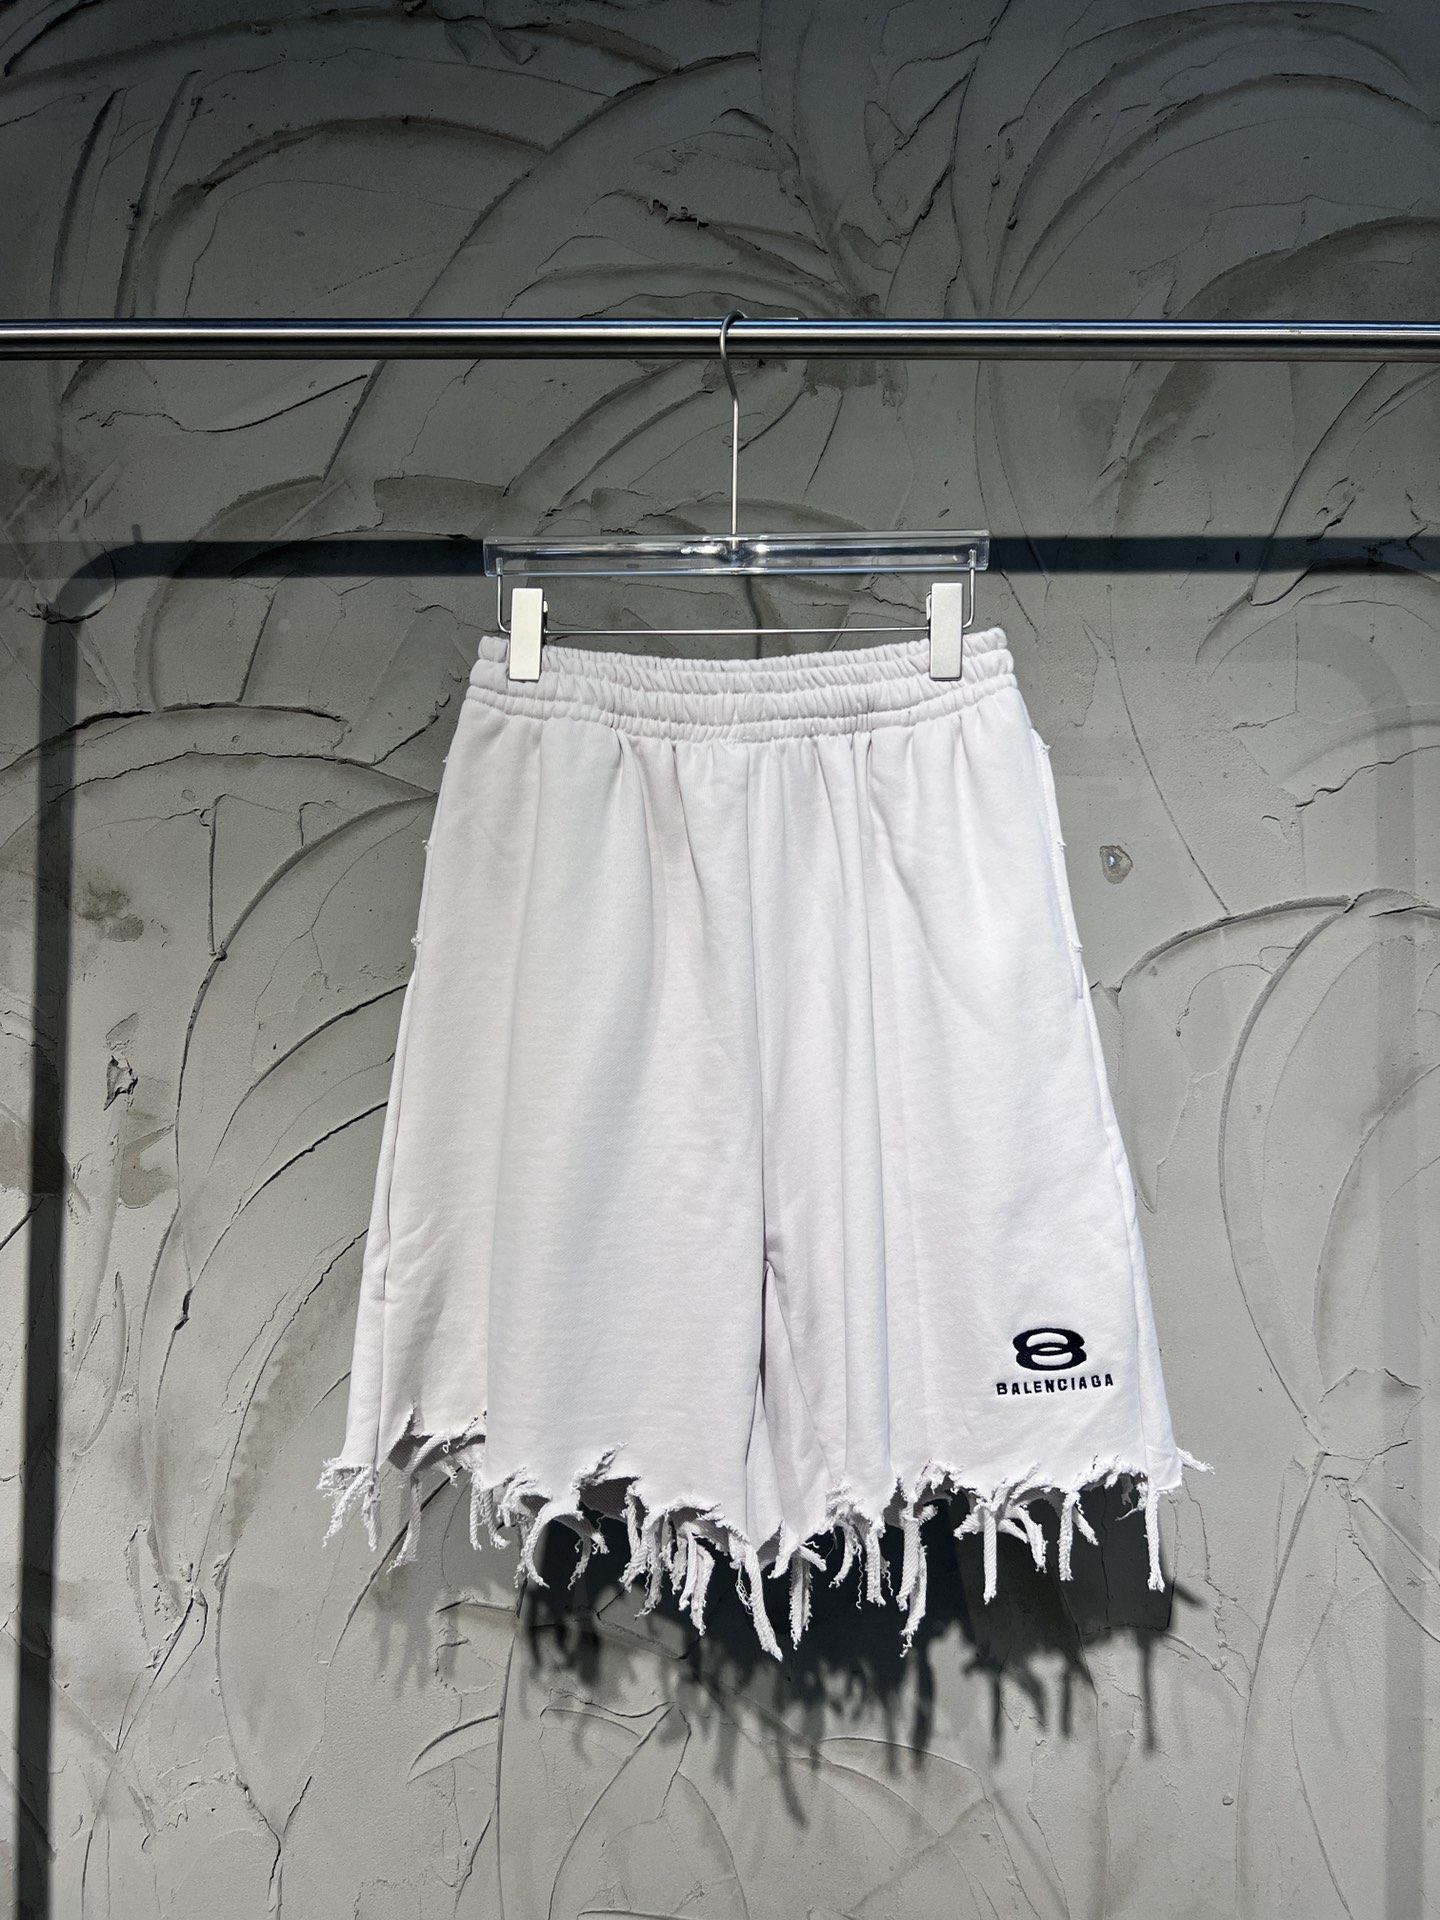 Balenciaga Clothing Shorts Embroidery Unisex Cotton Spring Collection